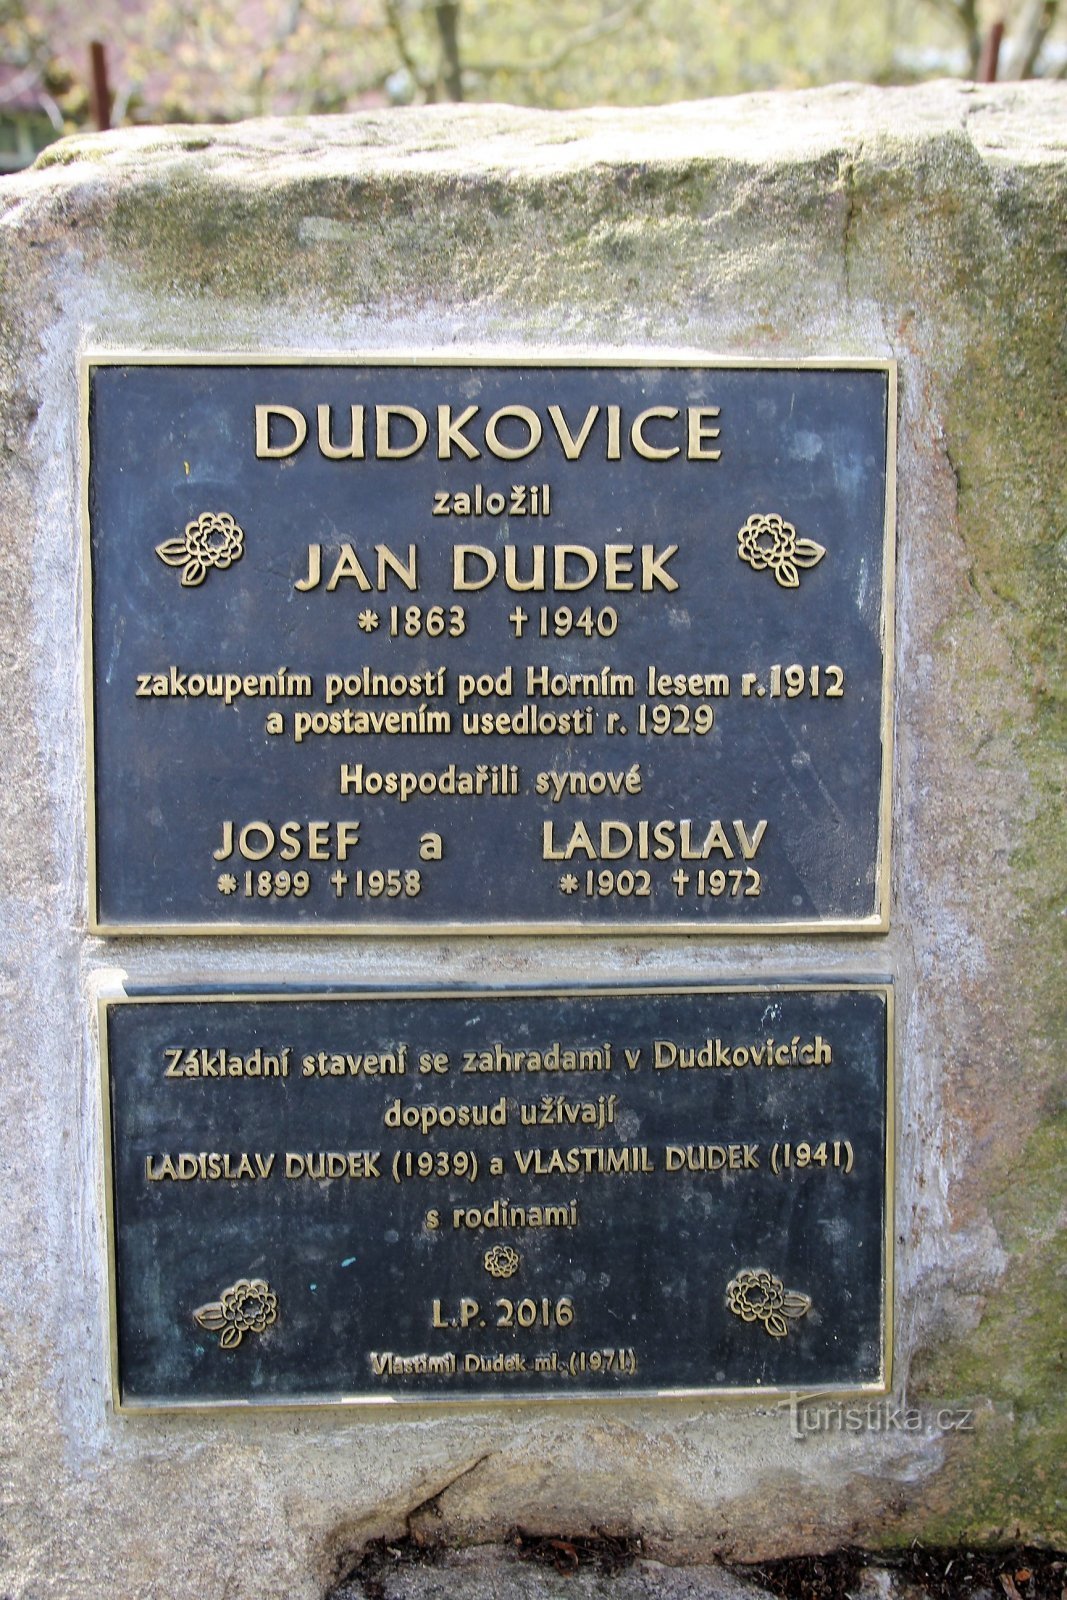 Piatti in bronzo con descrizione della famiglia Dudk